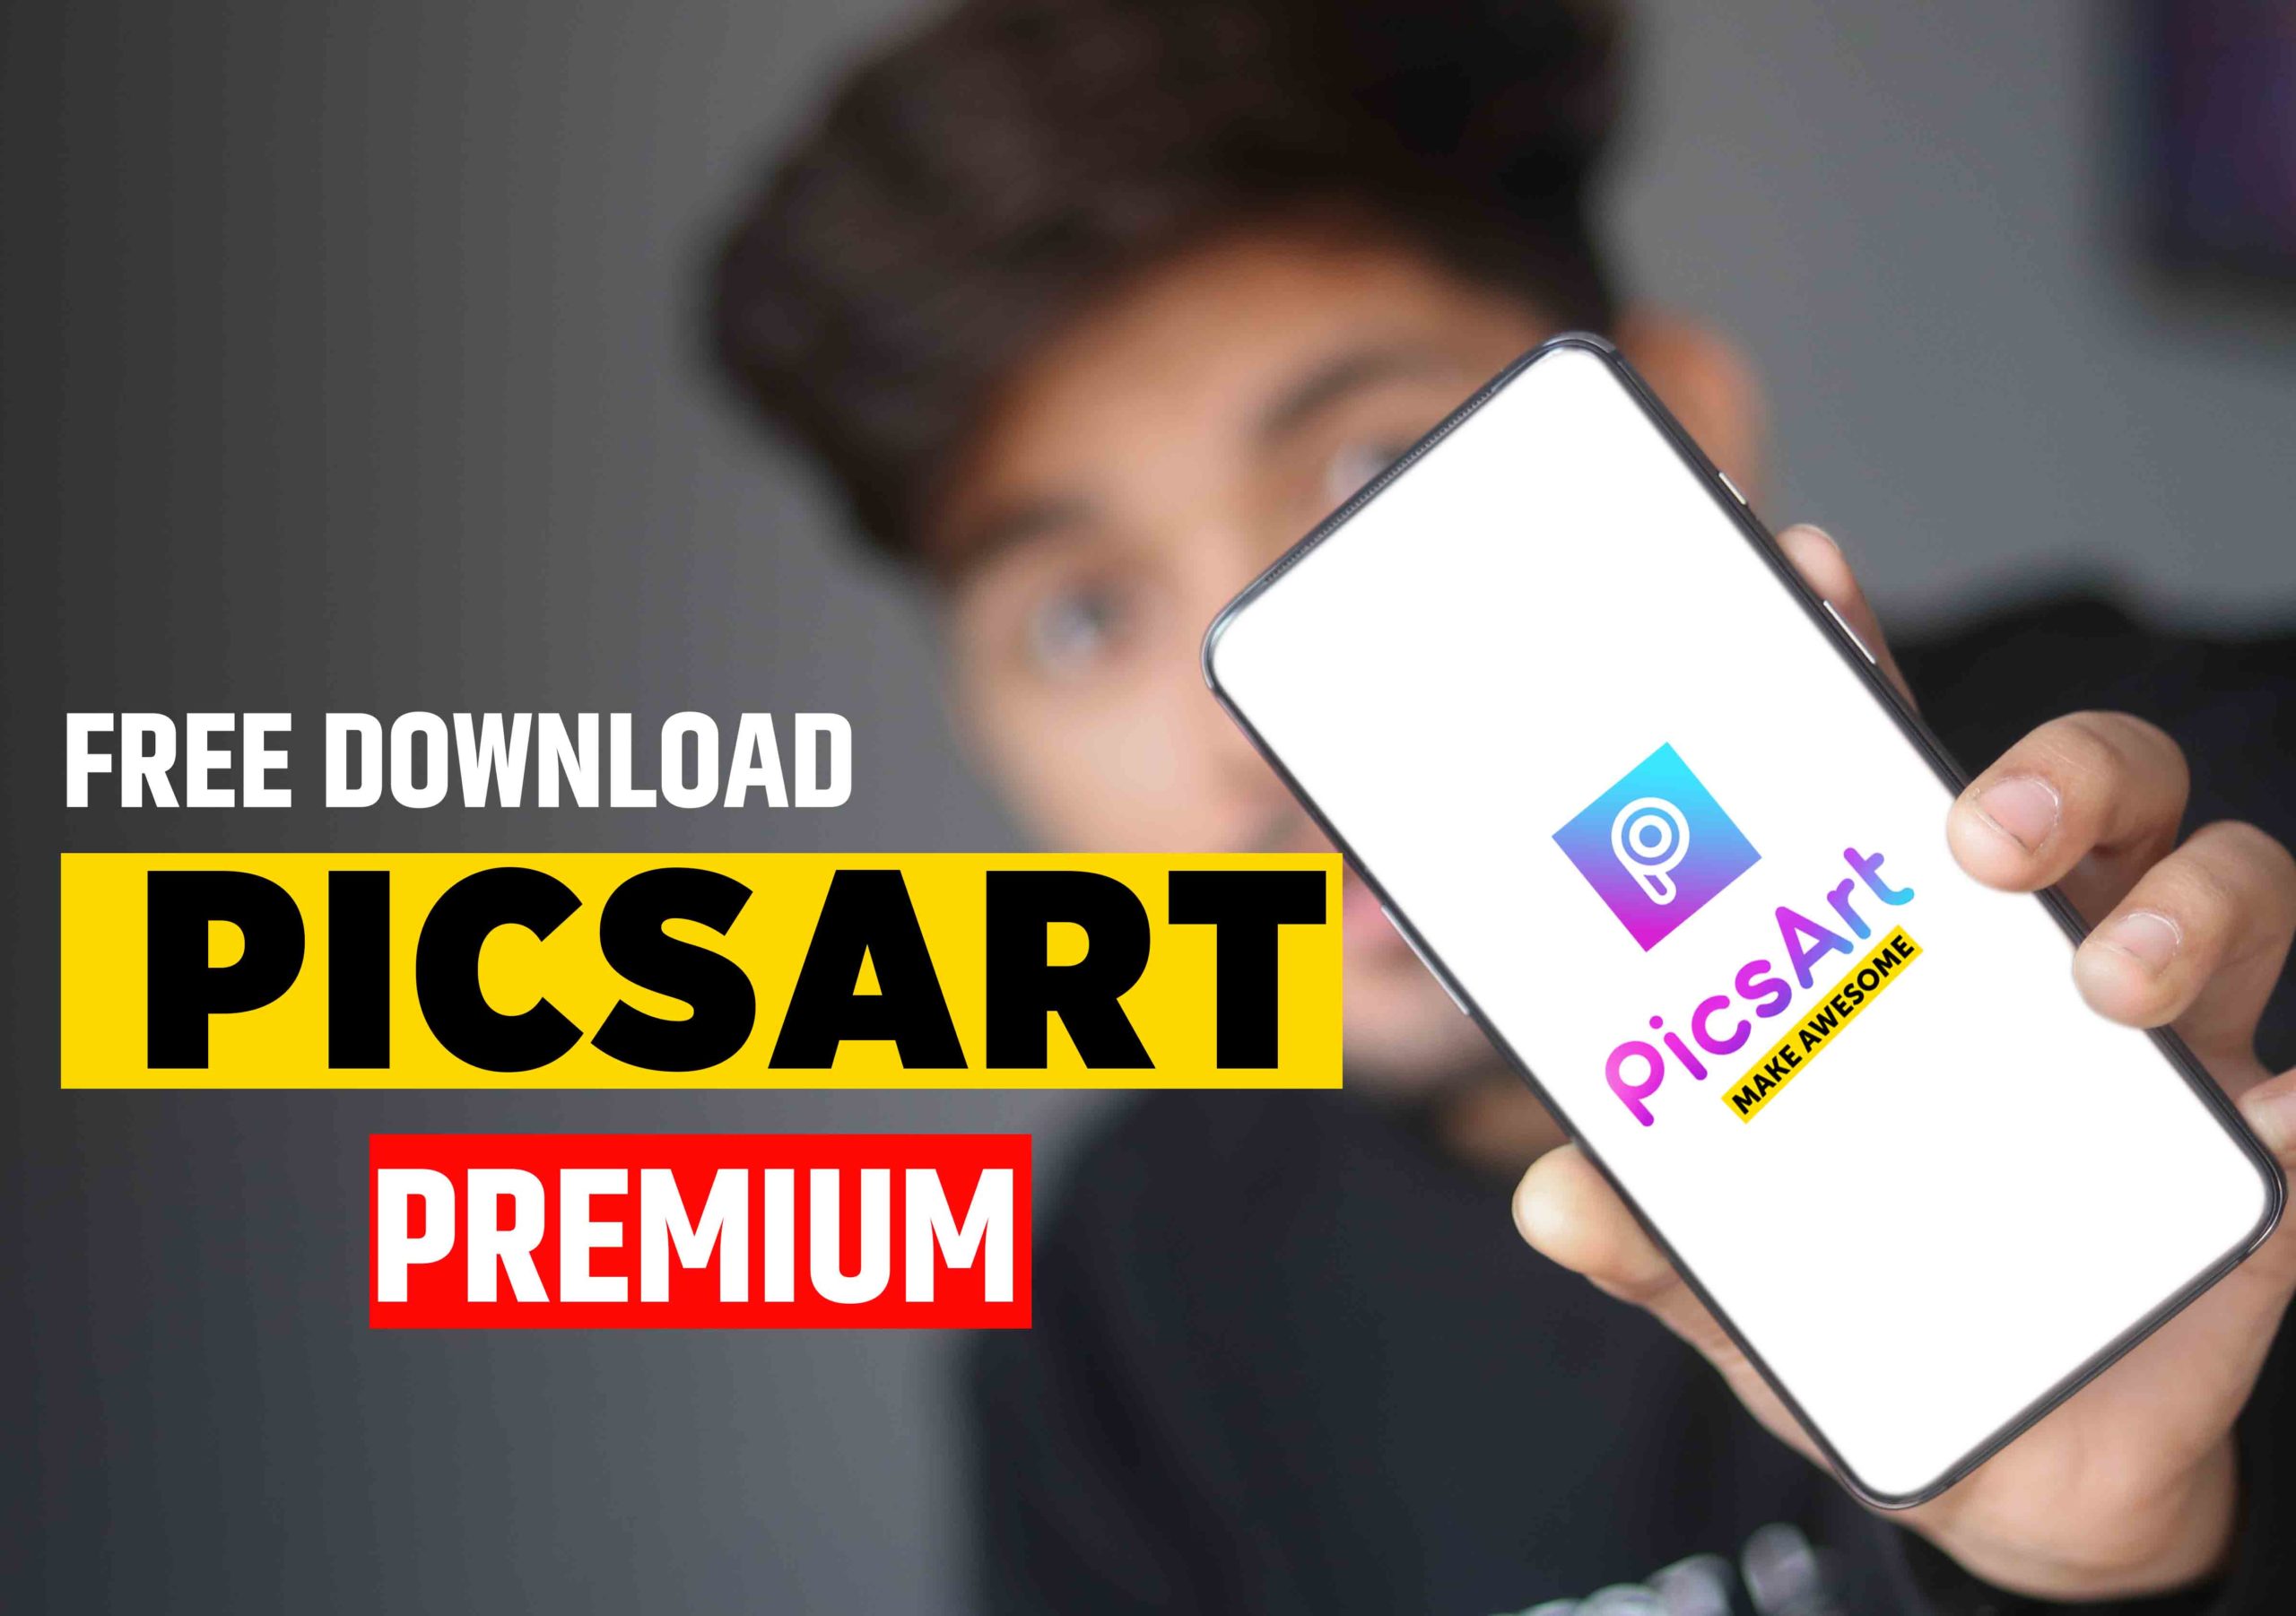 picsart premium apk download